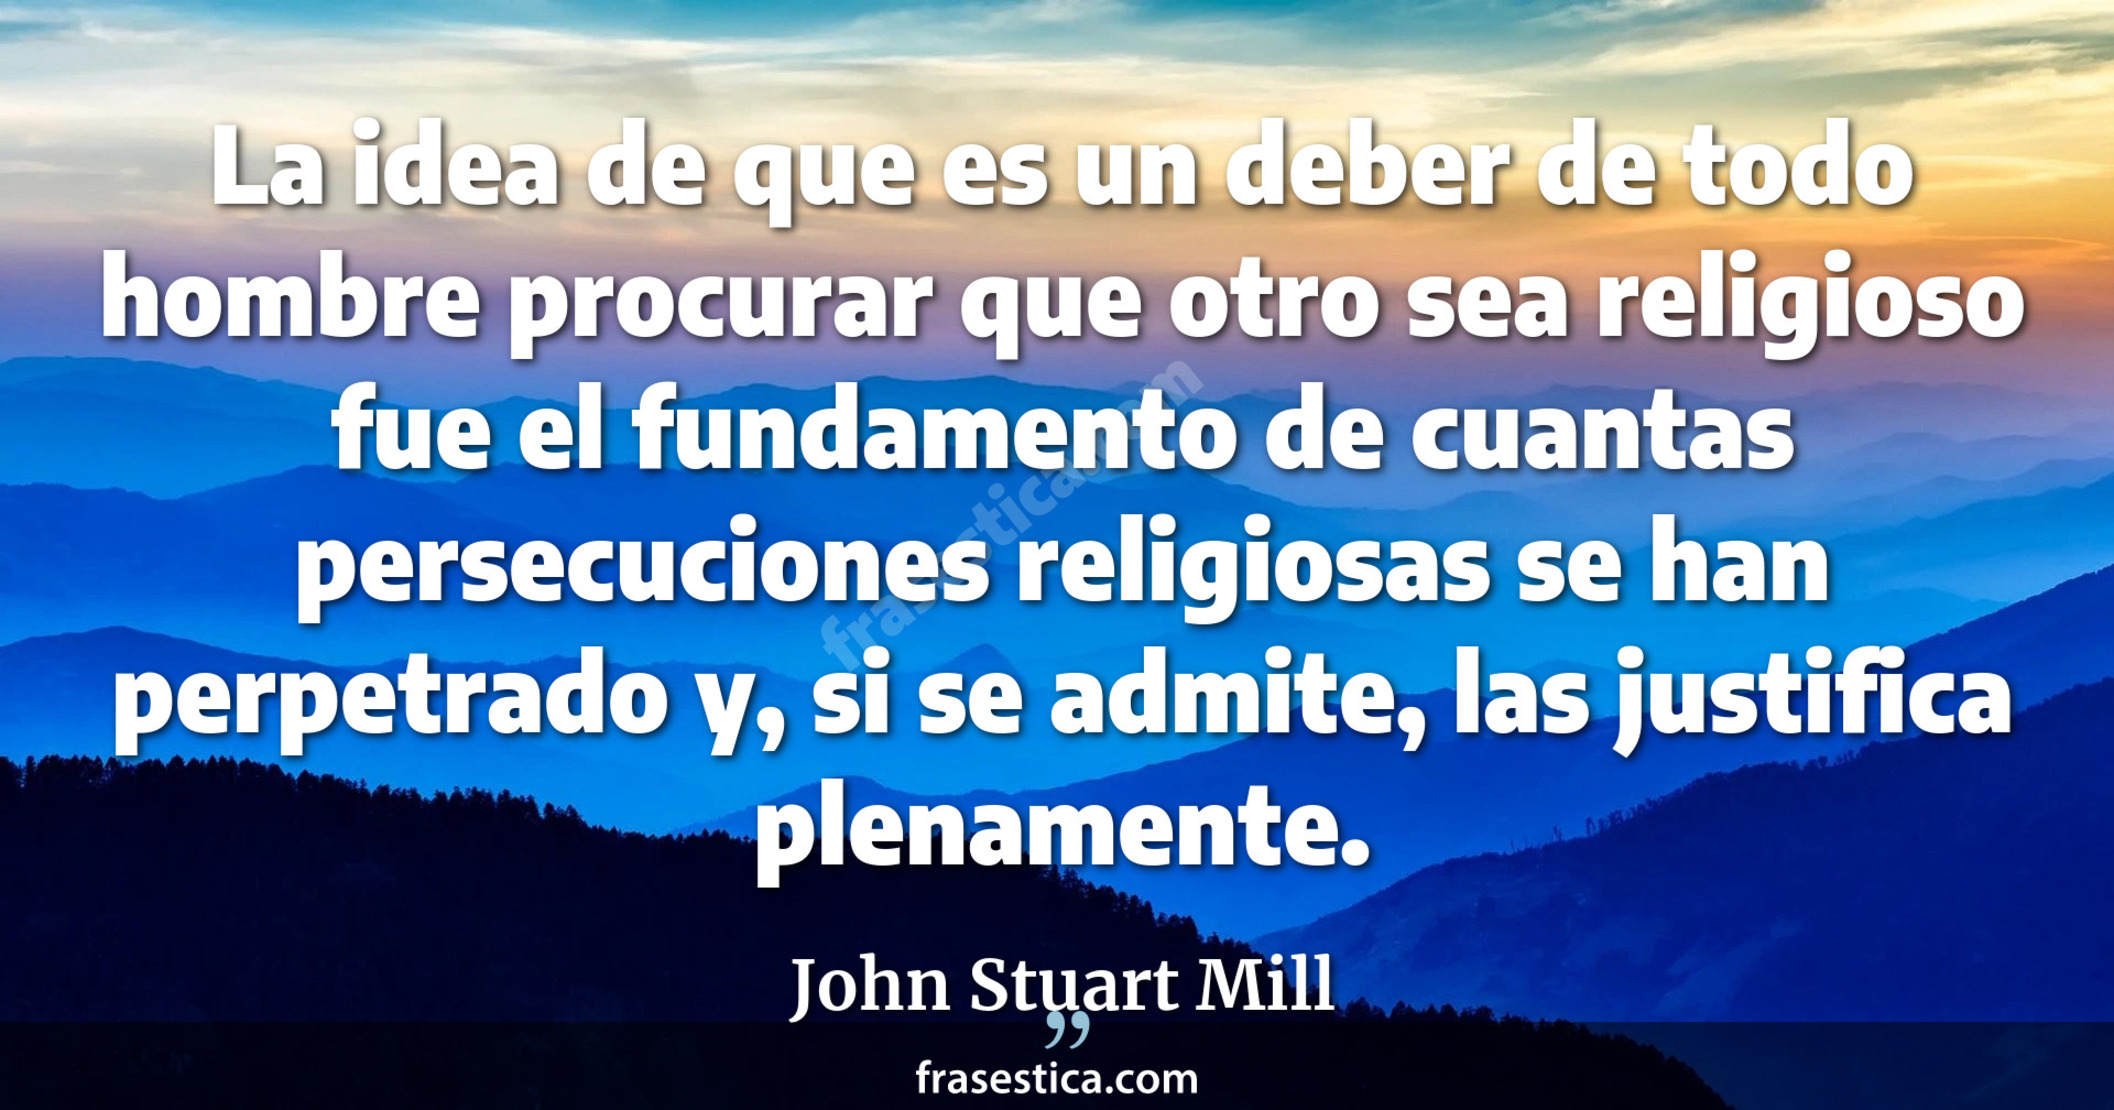 La idea de que es un deber de todo hombre procurar que otro sea religioso fue el fundamento de cuantas persecuciones religiosas se han perpetrado y, si se admite, las justifica plenamente. - John Stuart Mill